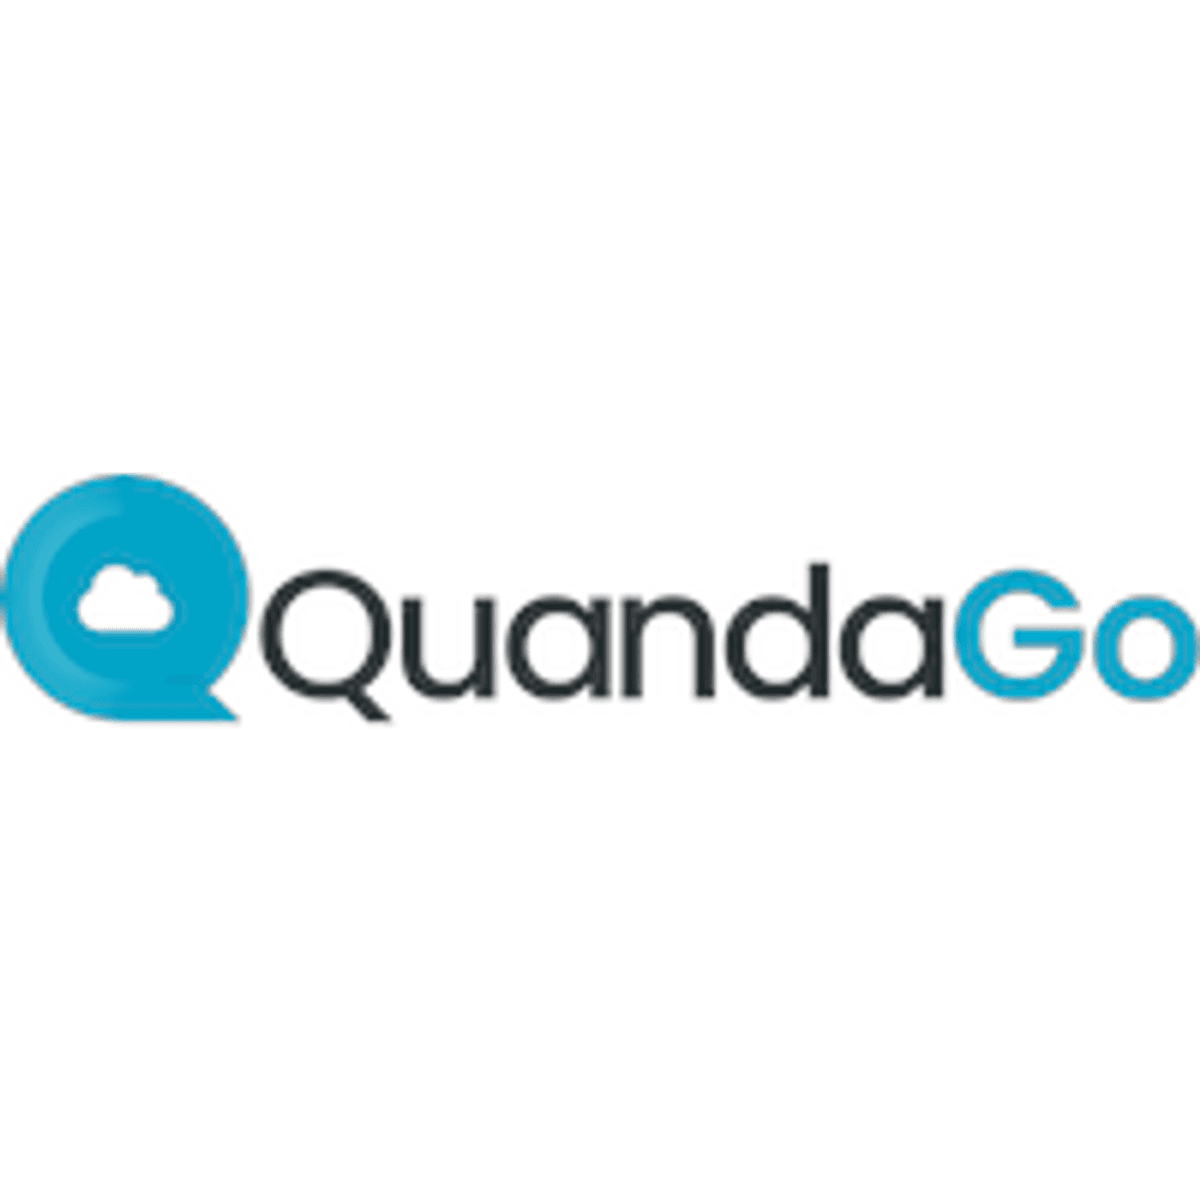 QuandaGo benoemt voormalige Genesys executives in topmanagement image